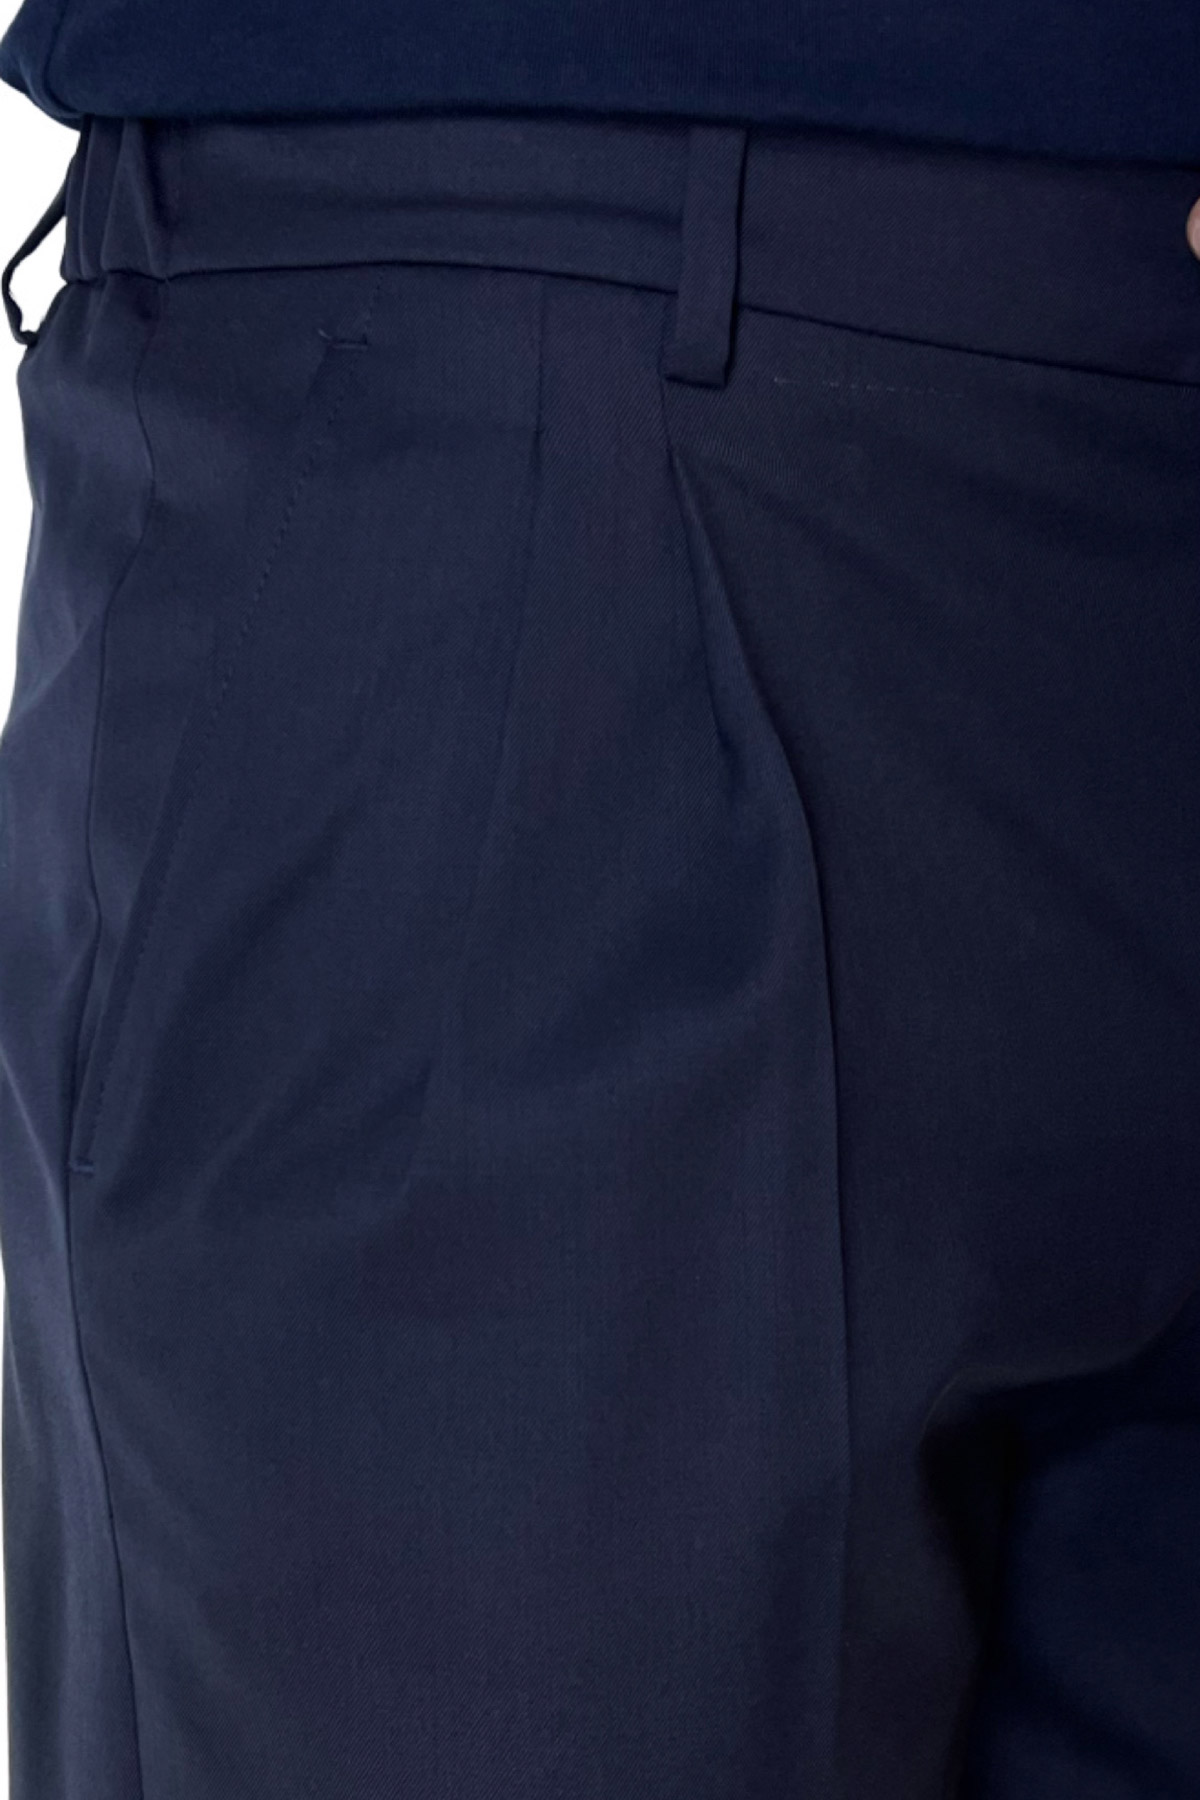 Bermuda uomo blu navy in fresco lana 100% vitale barberis canonico con mezza coulisse doppia pinces e tasca america